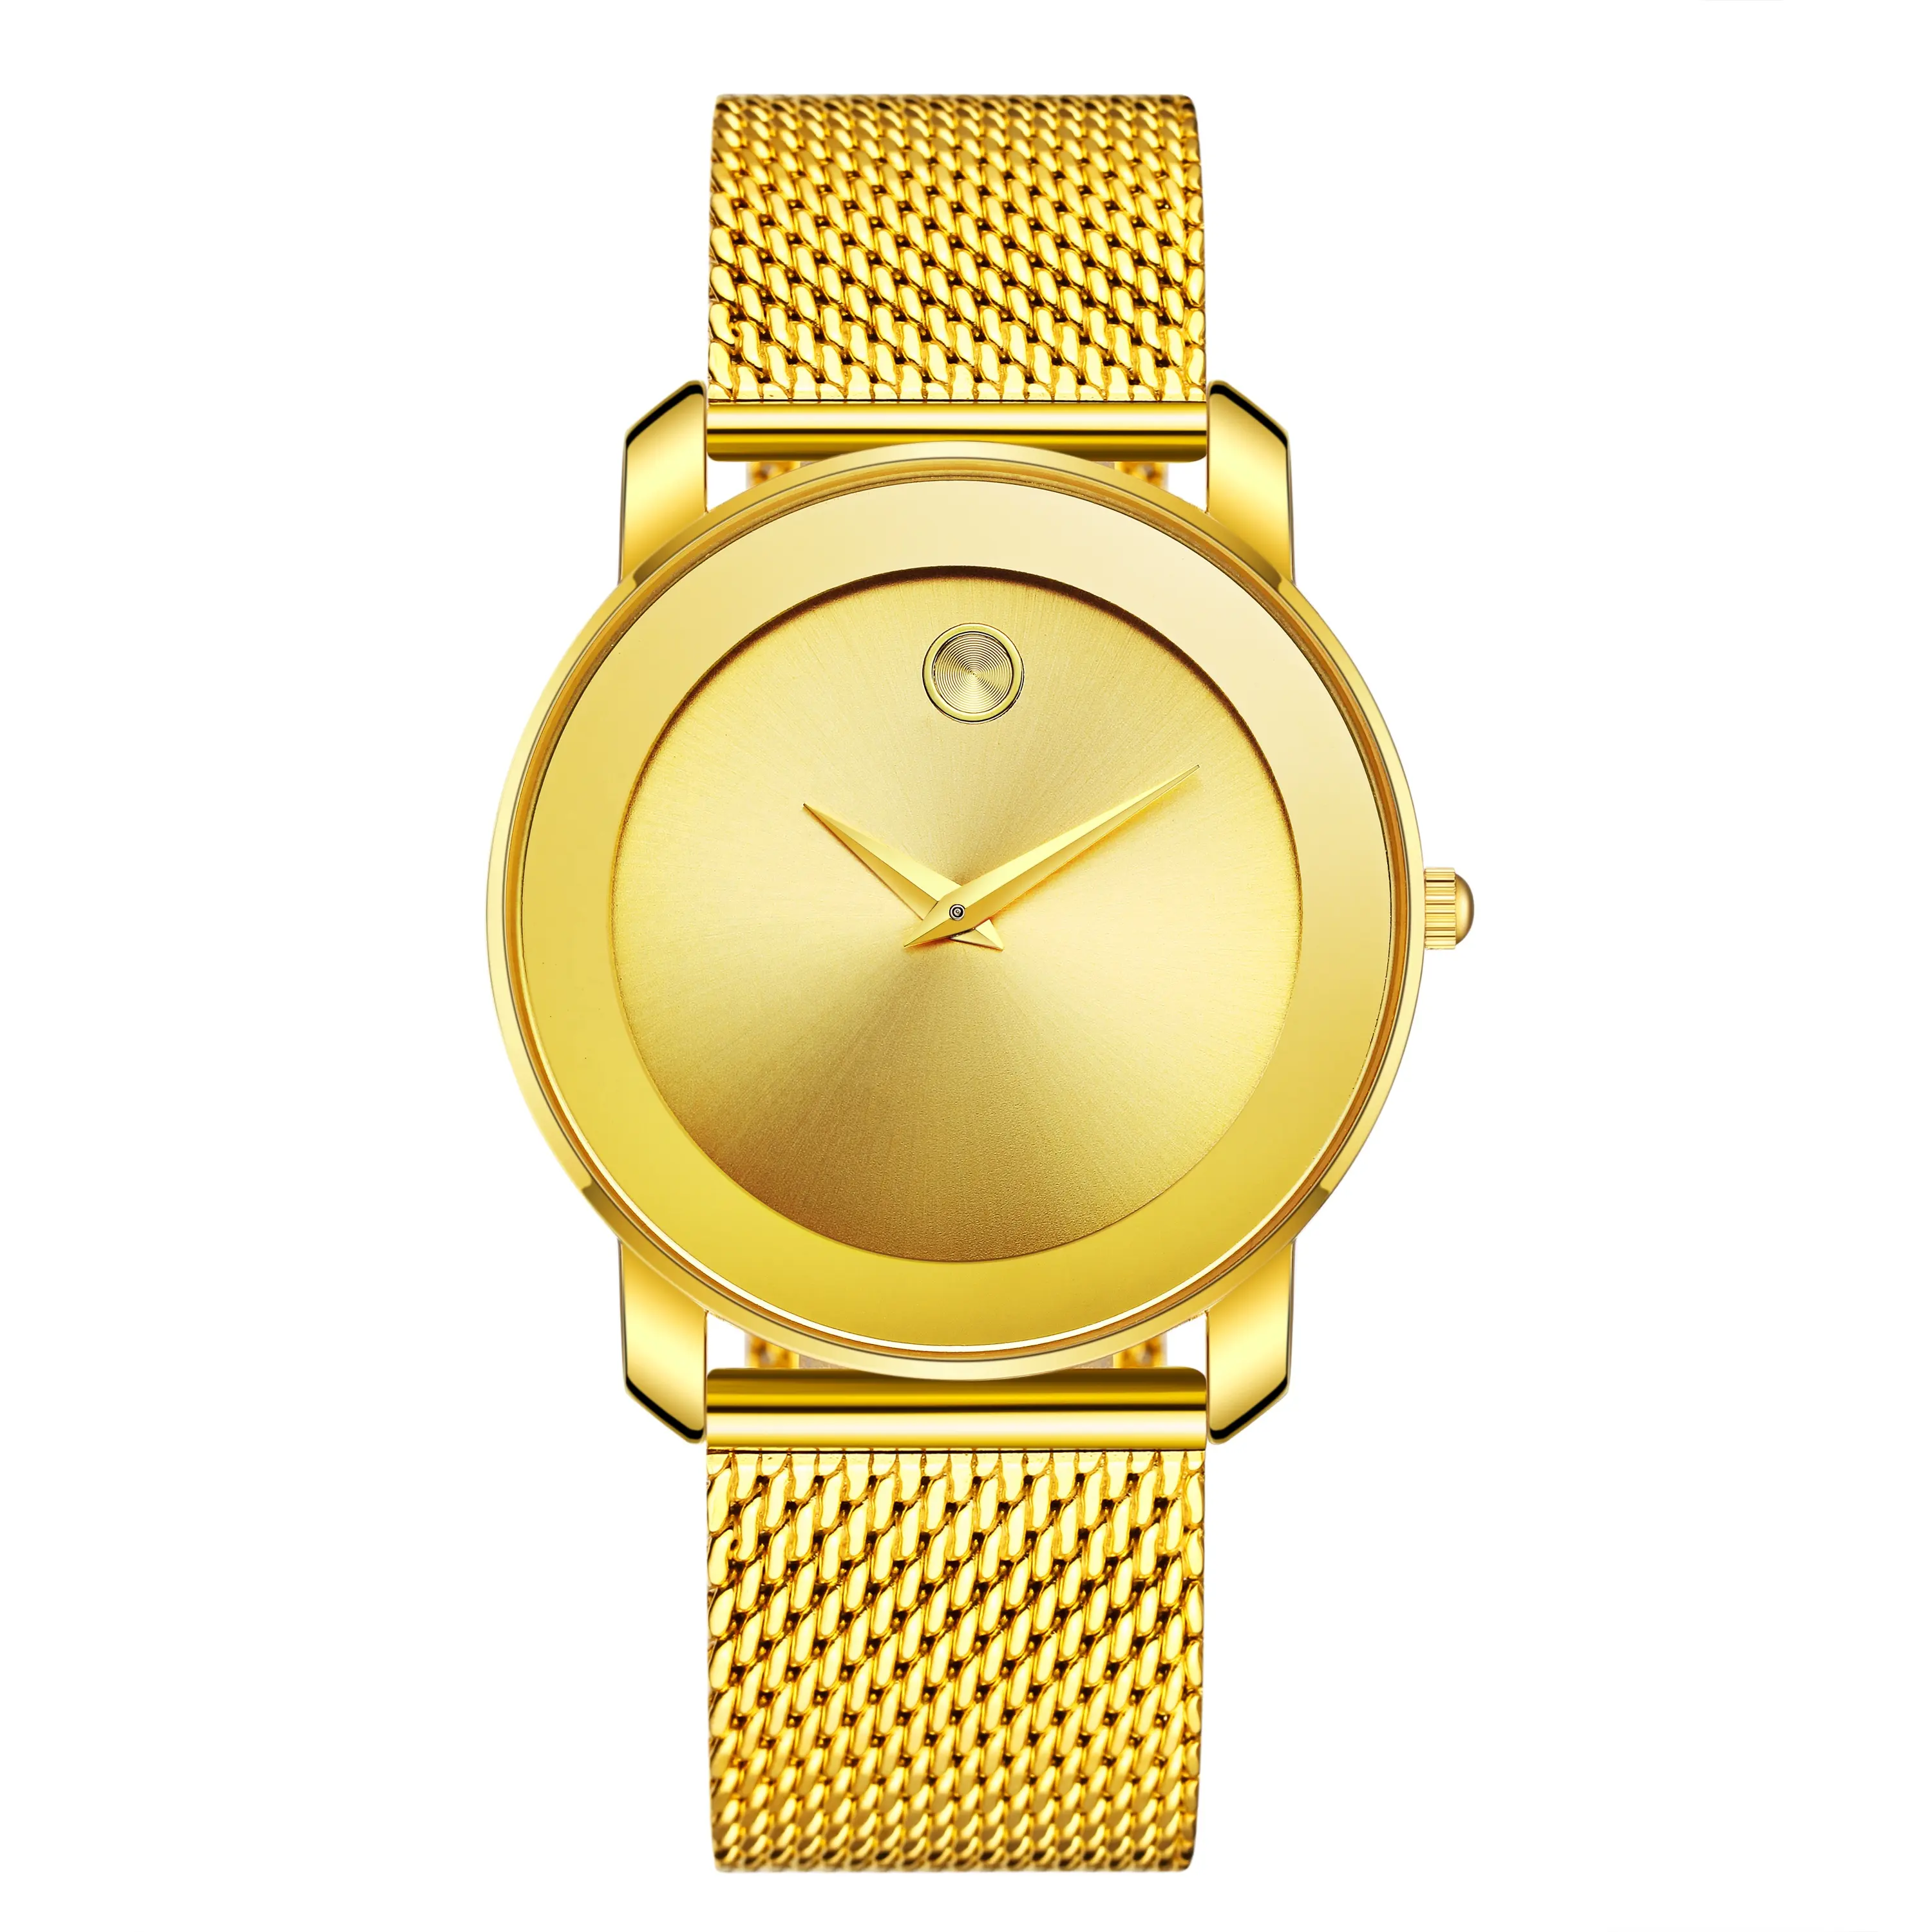 นาฬิกาแฟชั่นเรียบง่ายสำหรับผู้หญิง,นาฬิกาตาข่ายบางพิเศษสีทอง18K กันน้ำแนวลำลองสำหรับสุภาพสตรีนาฬิกาควอตซ์